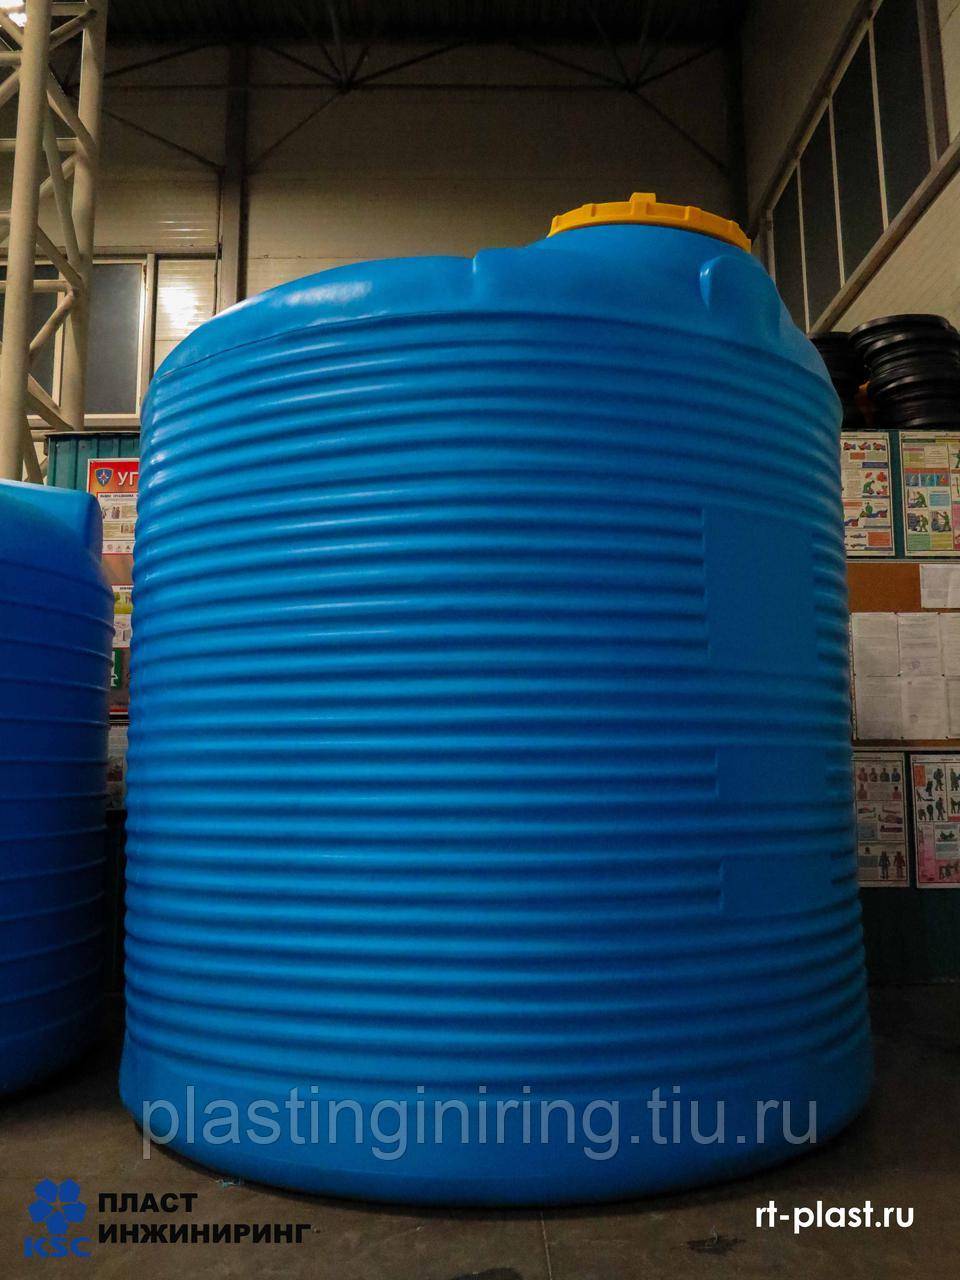 Резервуары для воды, пластиковые: прямоугольные, цилиндрические. горизонтальный, вертикальный вид +видео | greendom74.ru